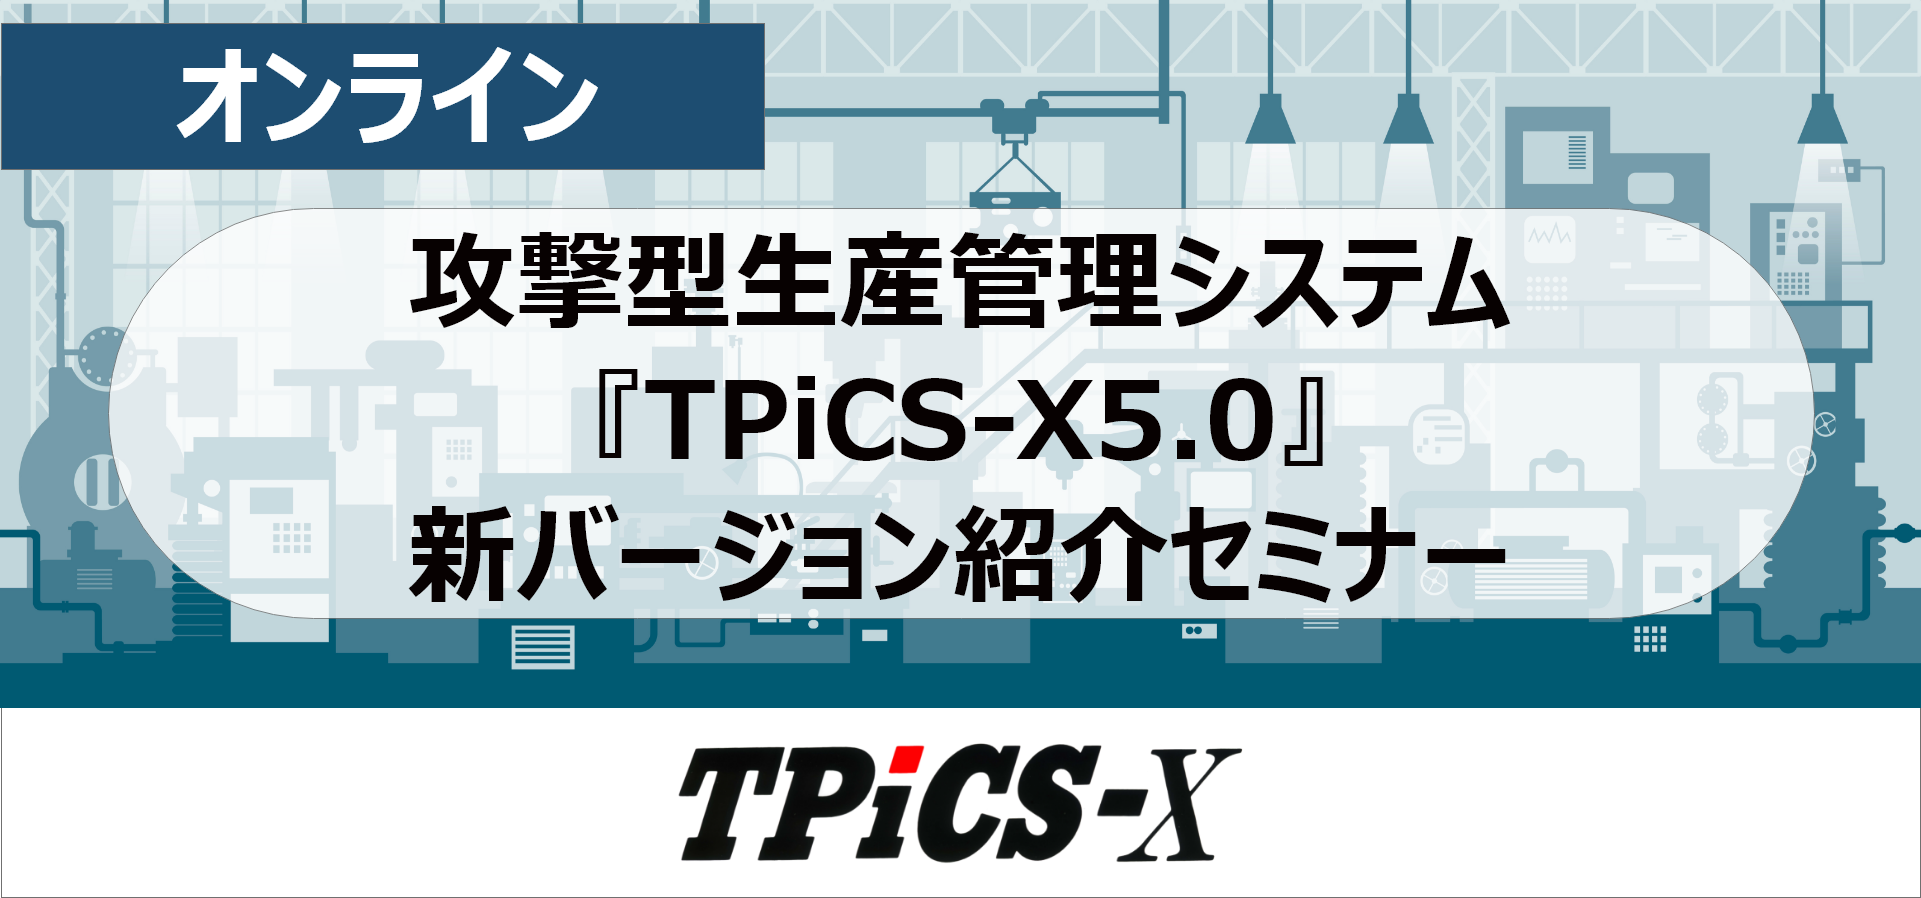 攻撃型生産管理システム『TPiCS-X5.0』新バージョンセミナー